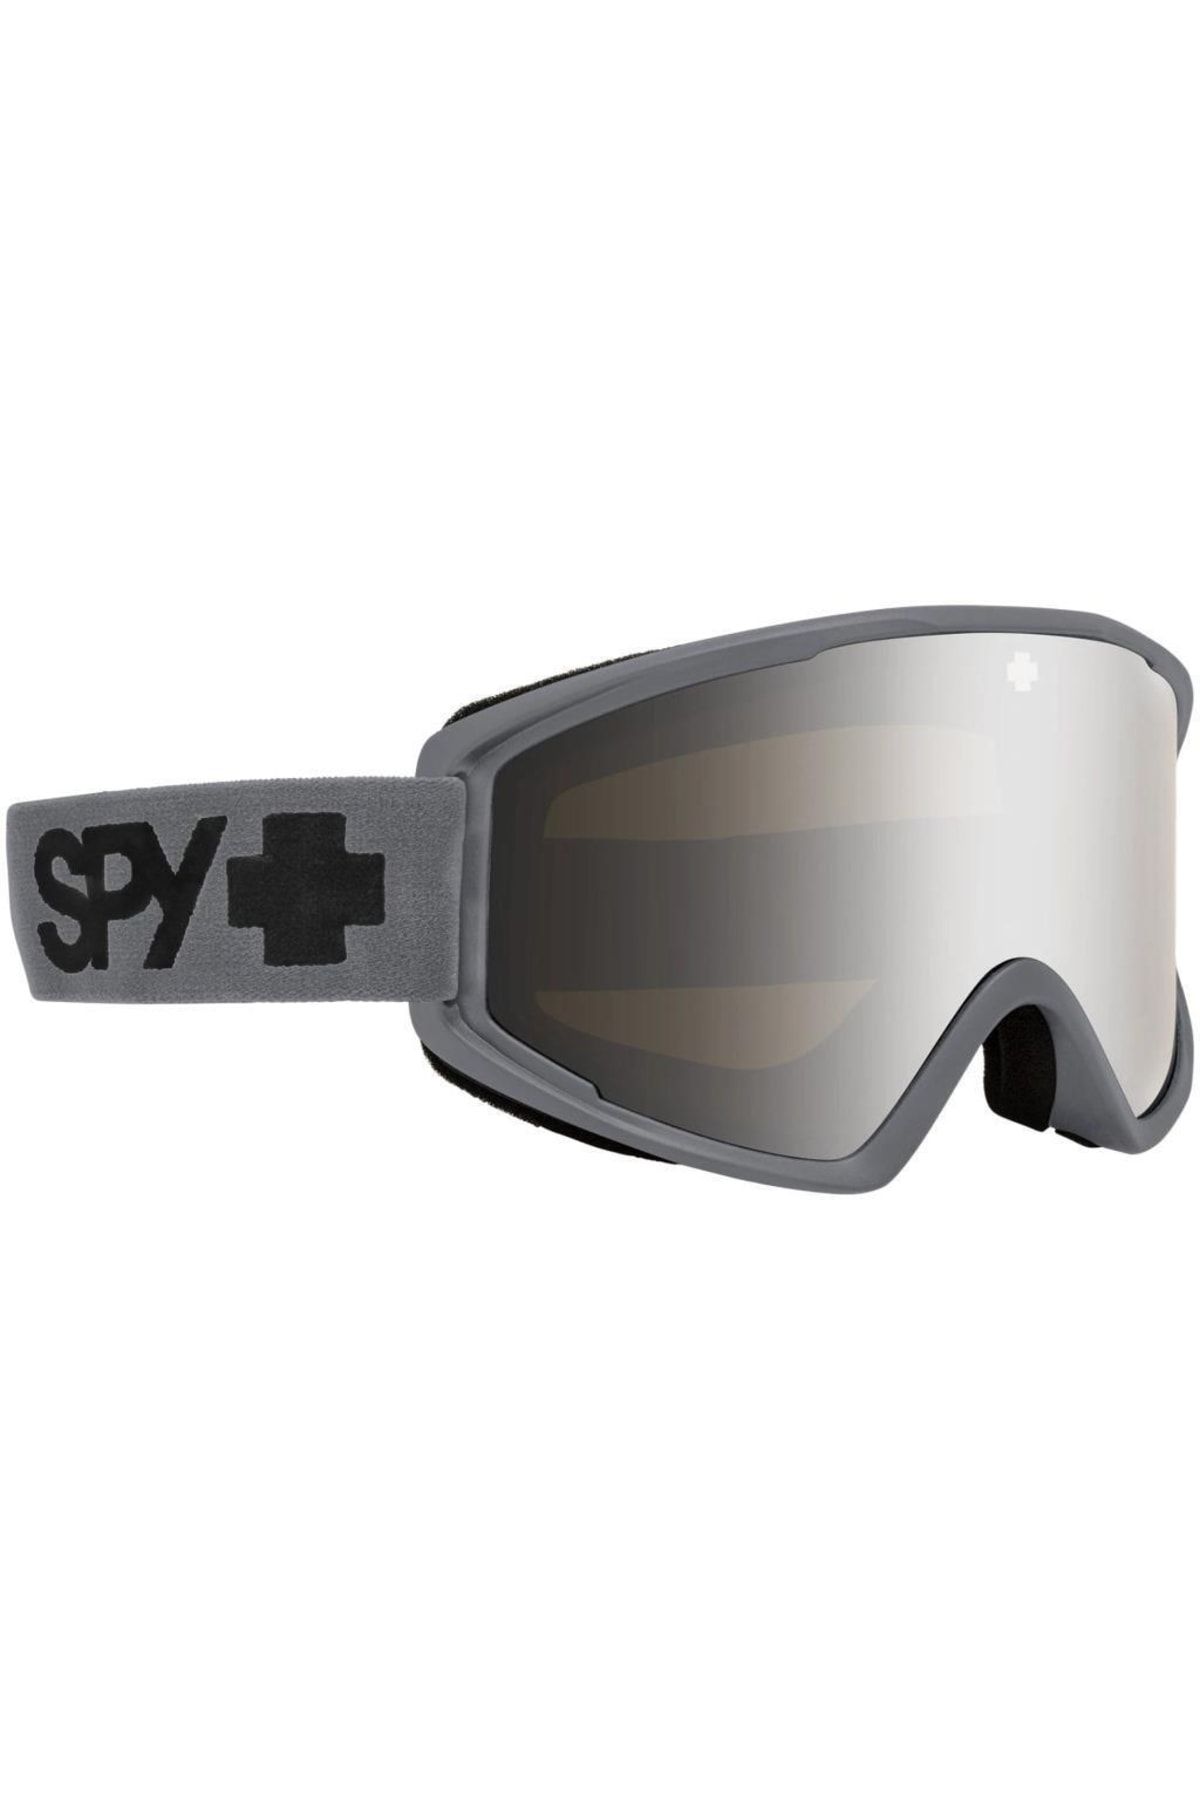 SPY Crusher Elite Kayak Gözlüğü 3100000000008